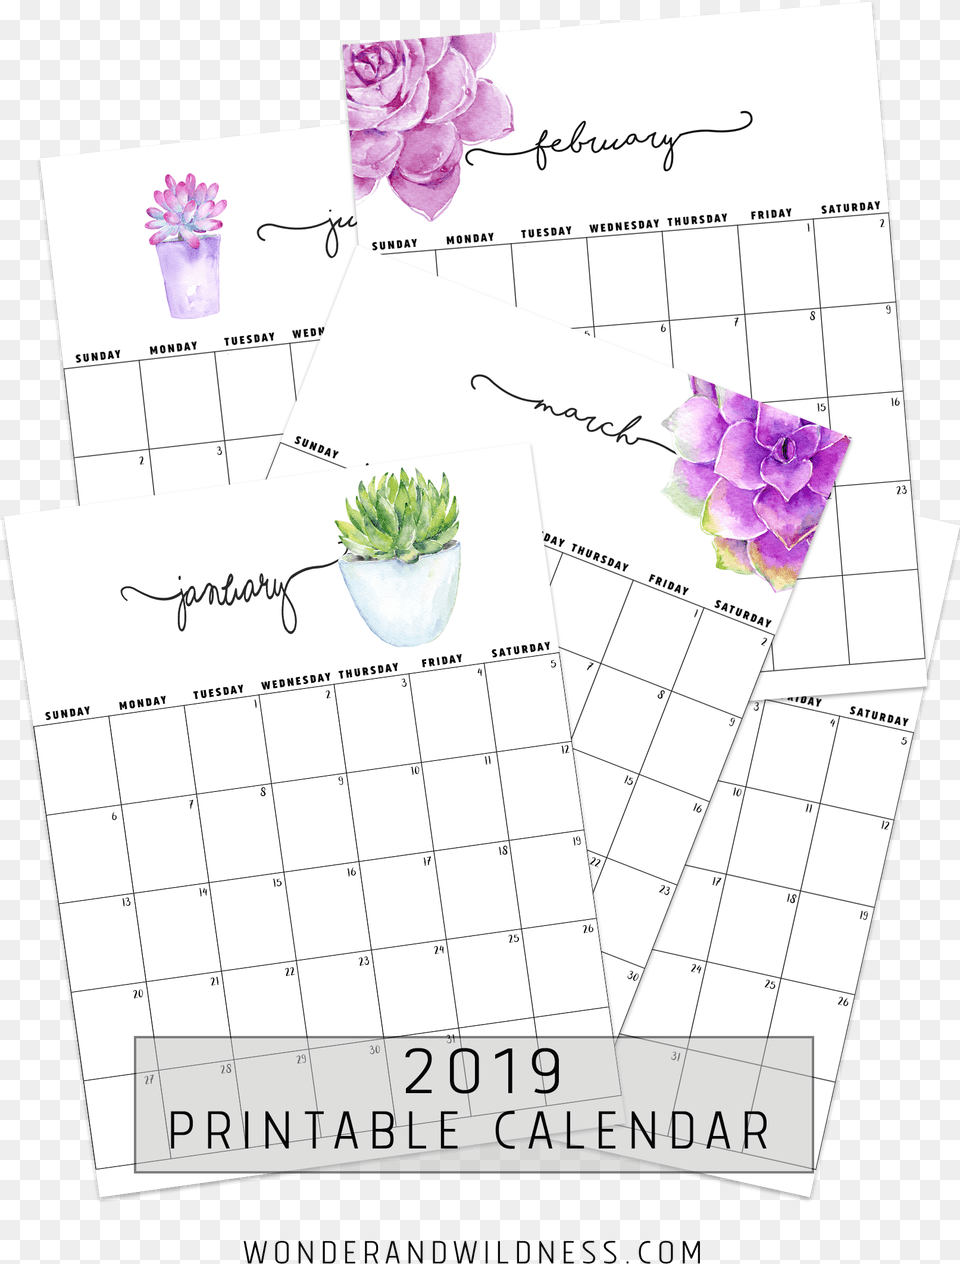 2019 Printable Succulent Calendar, Plant, Flower, Text Png Image